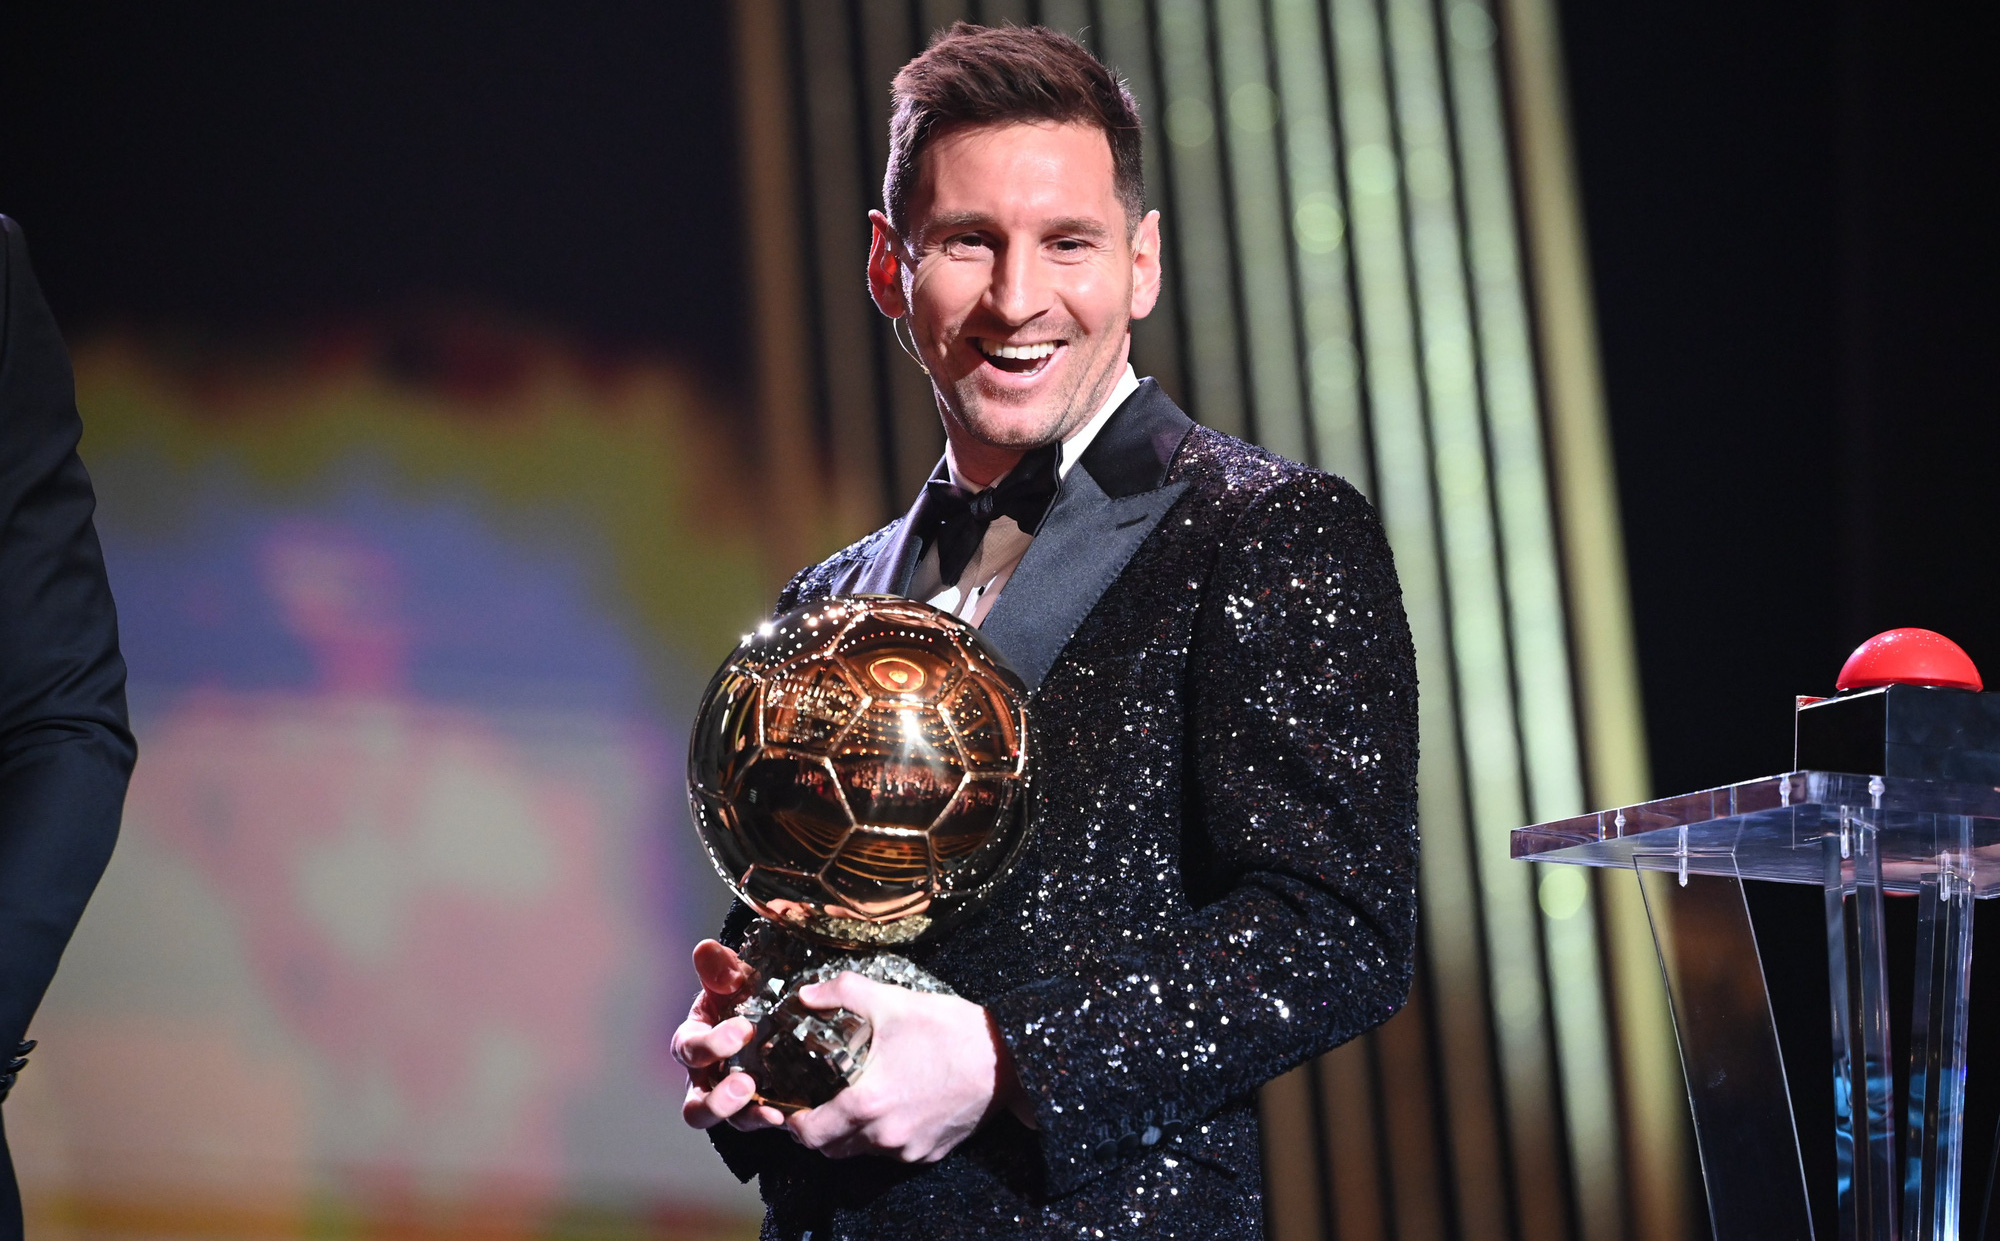 Quả bóng vàng dành cho cầu thủ xuất sắc nhất năm, và không ai có thể phủ nhận rằng Messi hoàn toàn xứng đáng nhận giải thưởng đó. Hãy đến và xem hình ảnh liên quan tới Messi và Quả bóng vàng để ngưỡng mộ tài năng của ngôi sao bóng đá này!